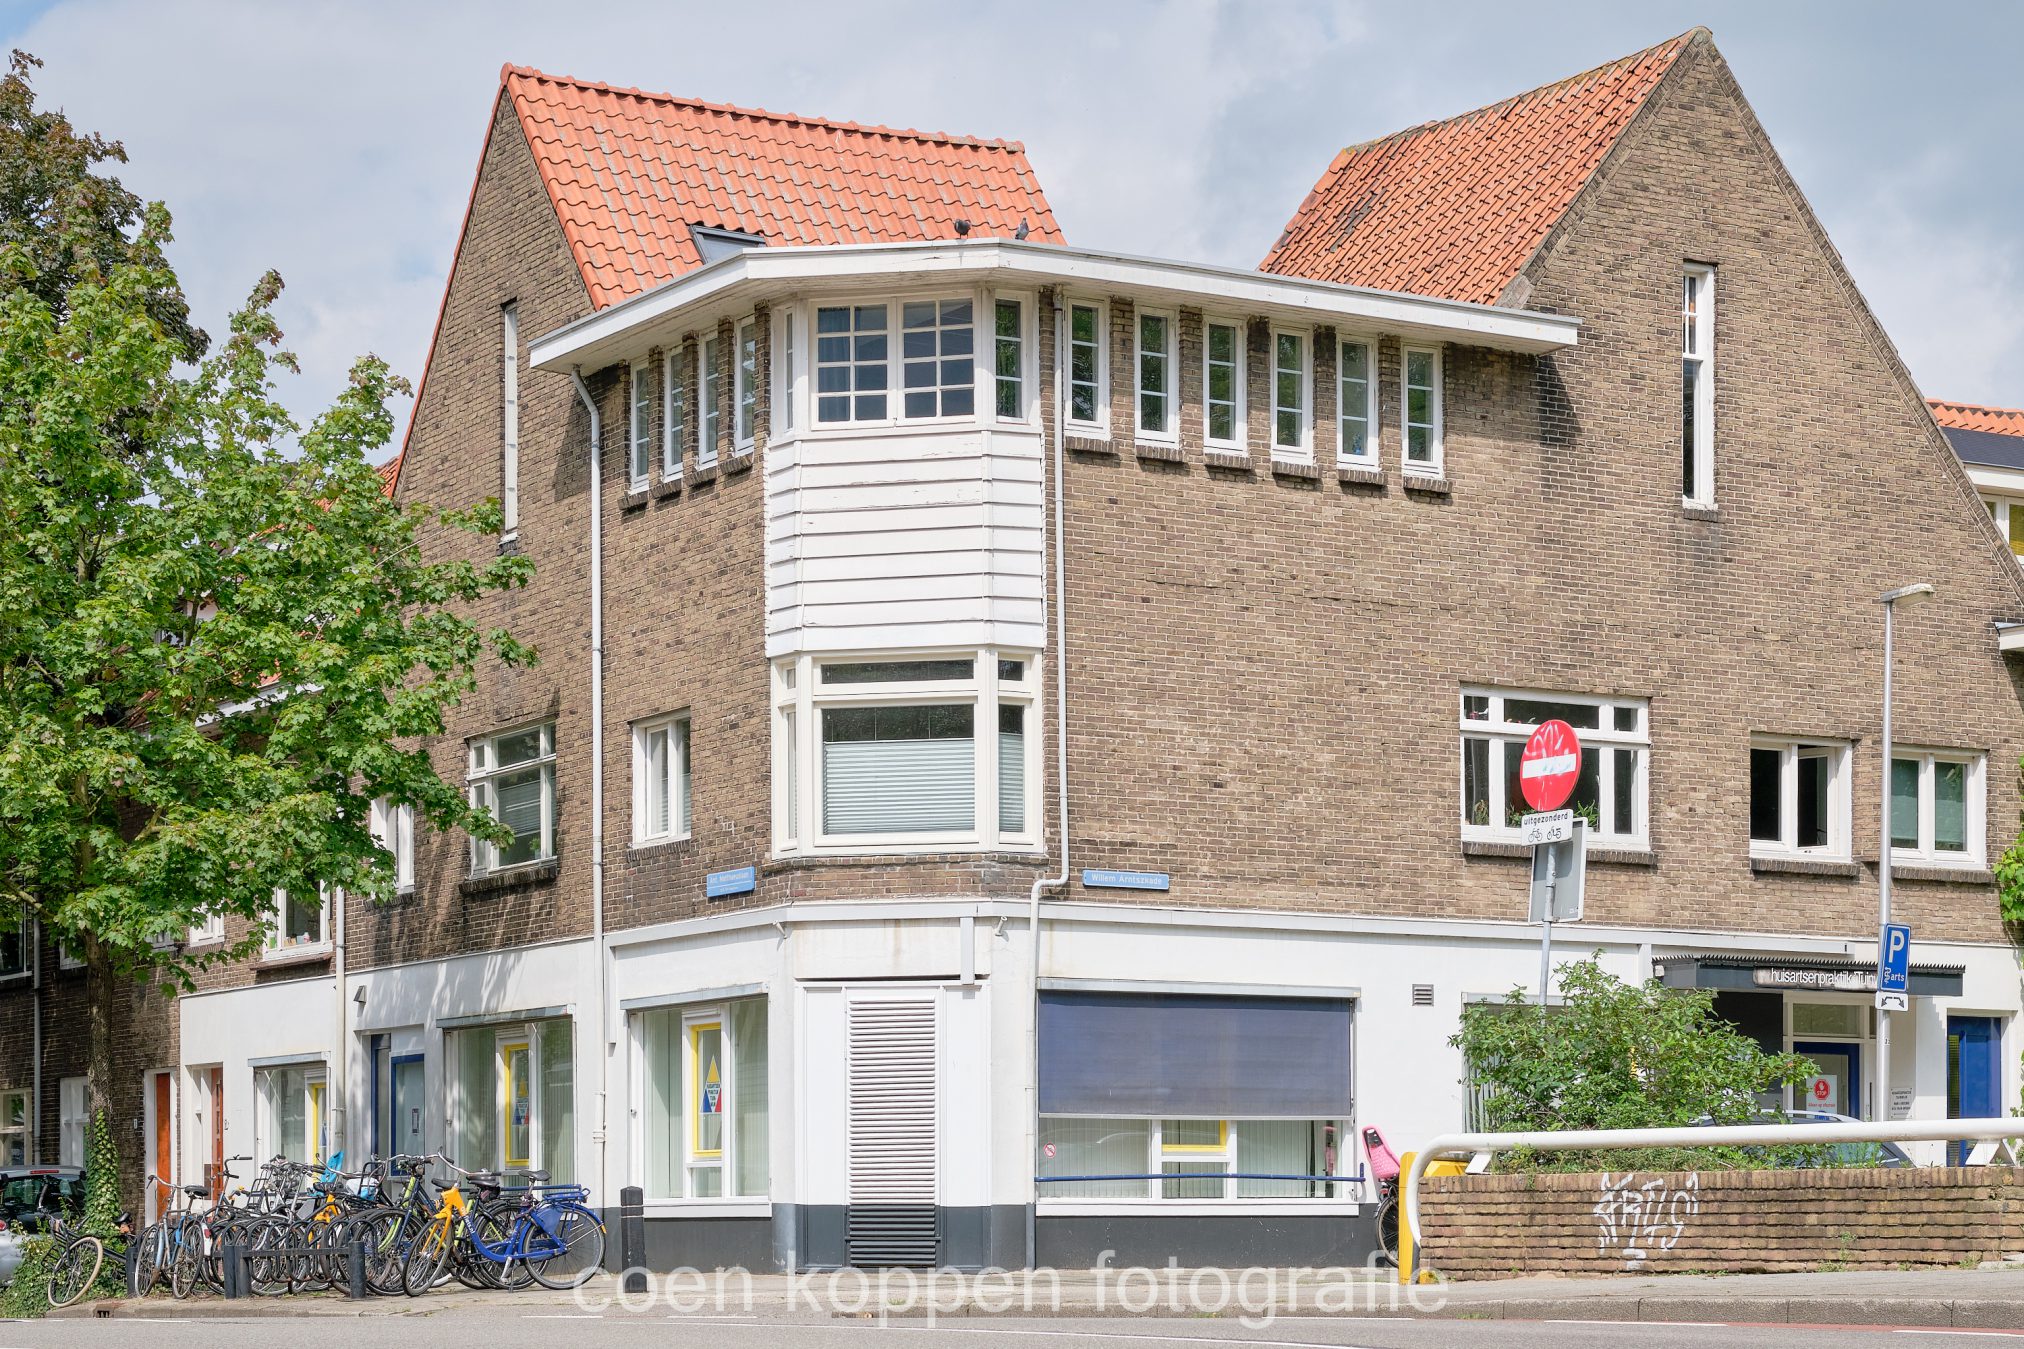 Huisartsenpraktijk Tuinwijk in Utrecht - Coen Koppen Fotografie